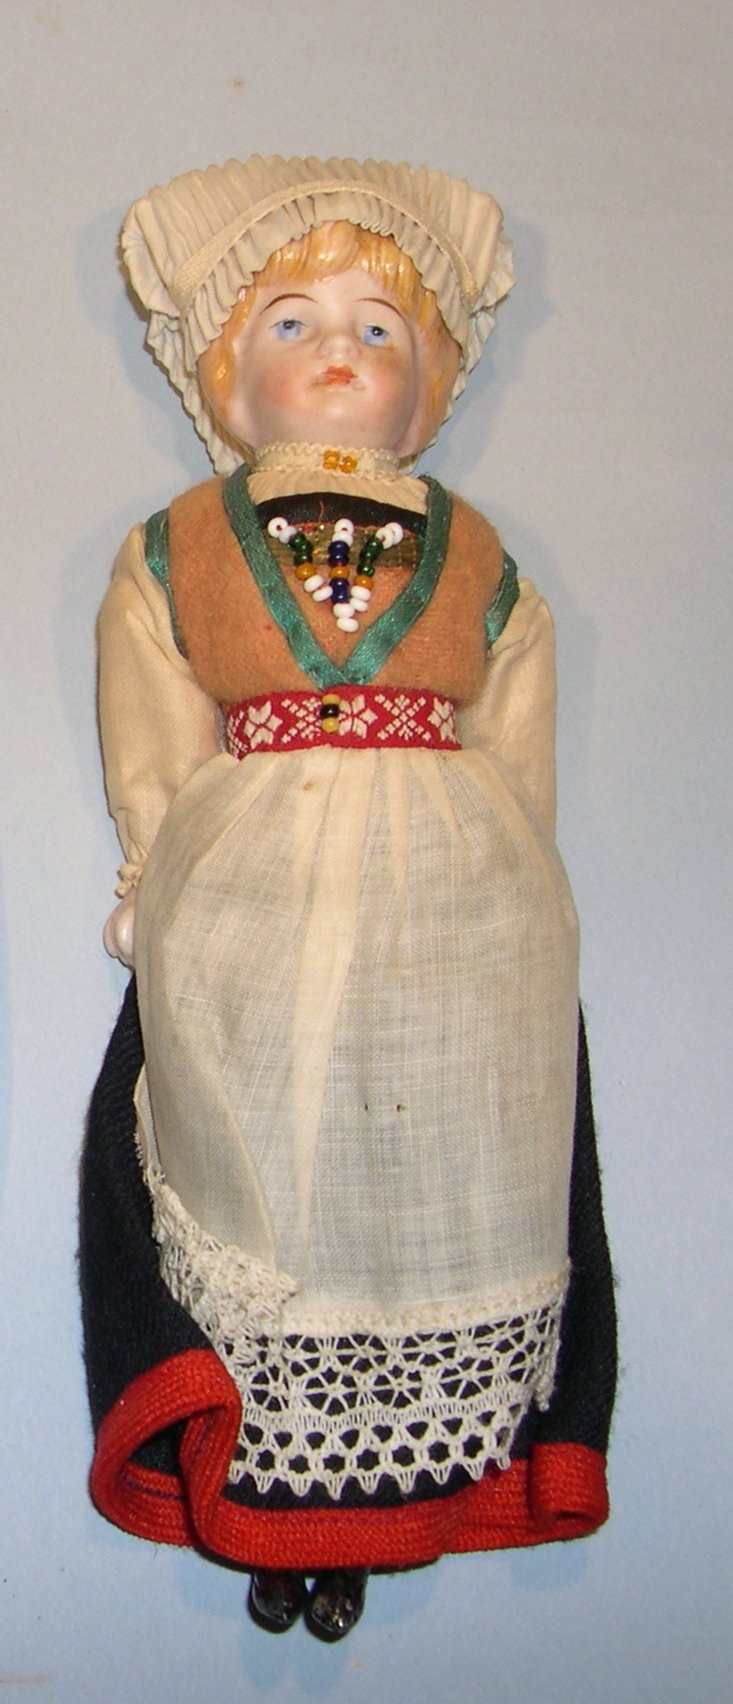 Scandinavian doll in regional dress